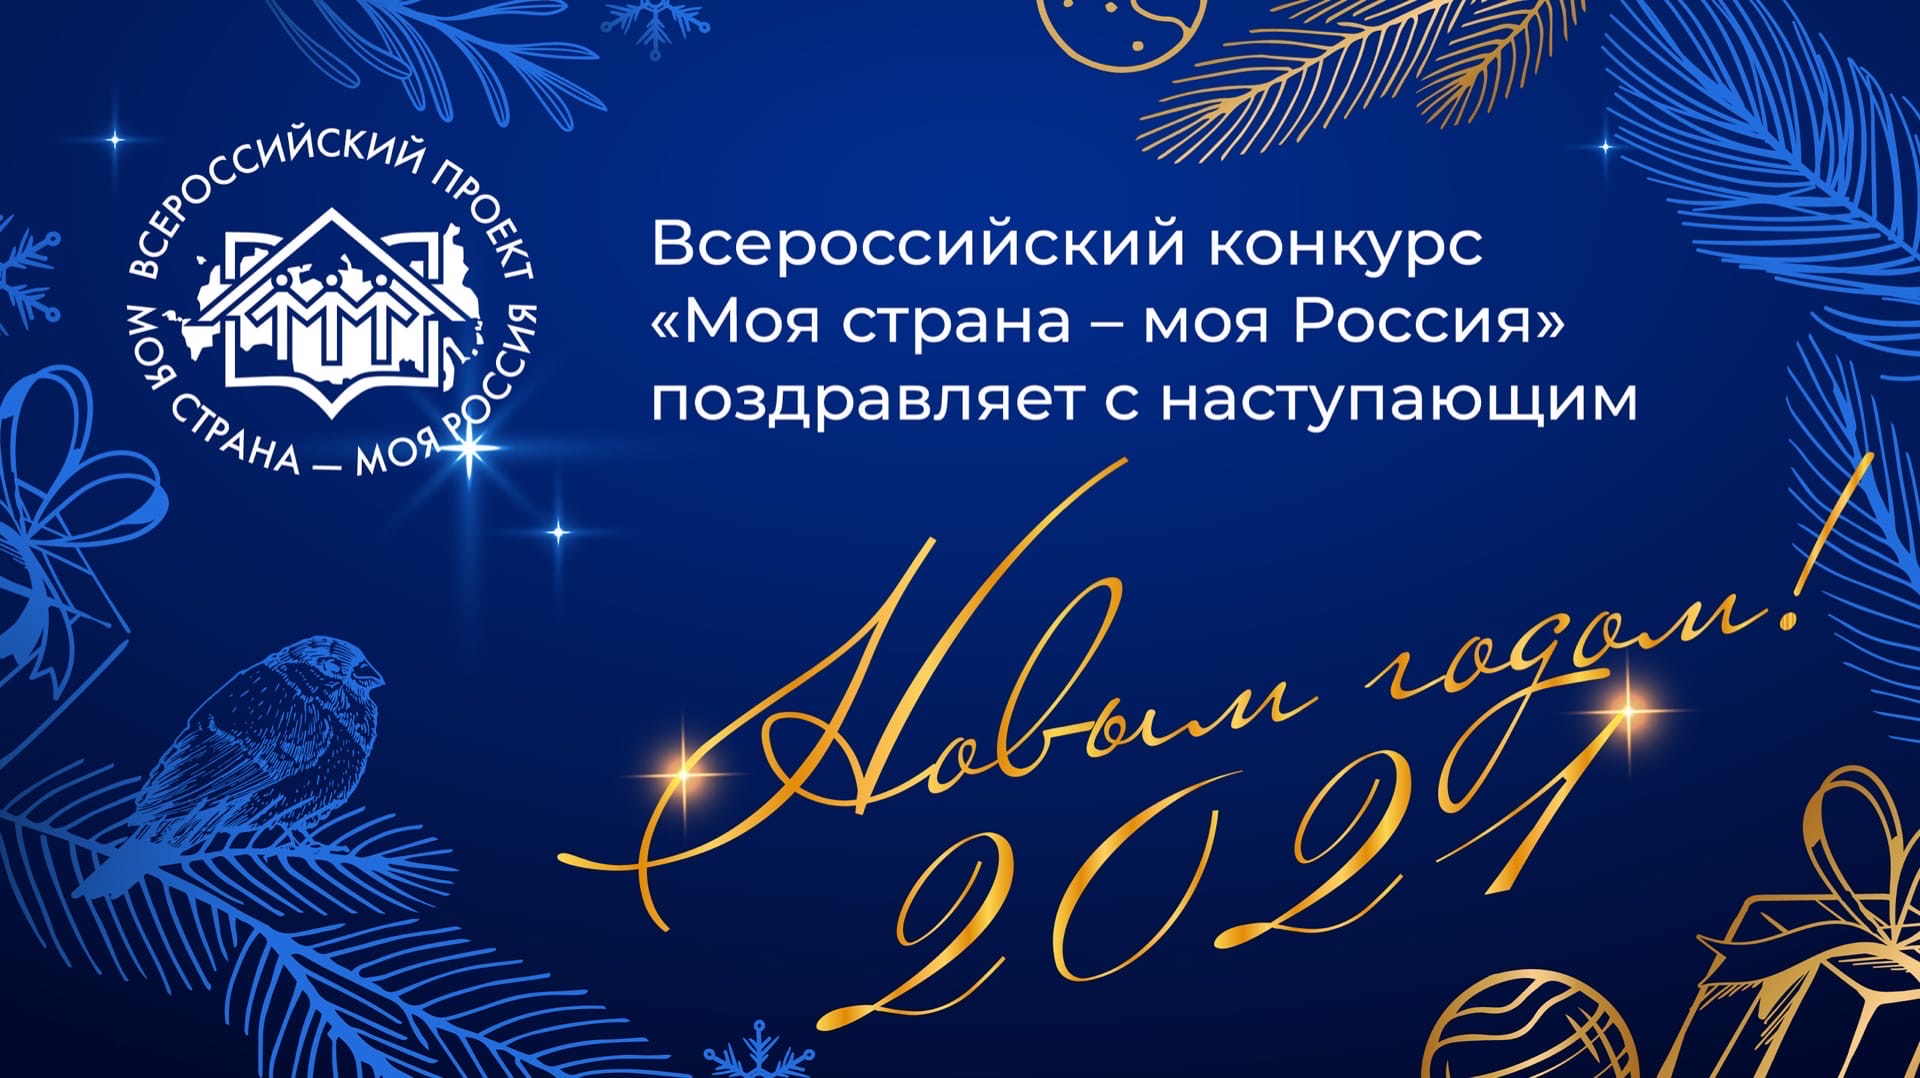 Всероссийский конкурс «Моя страна - моя Россия» поздравляет с наступающим Новым годом!